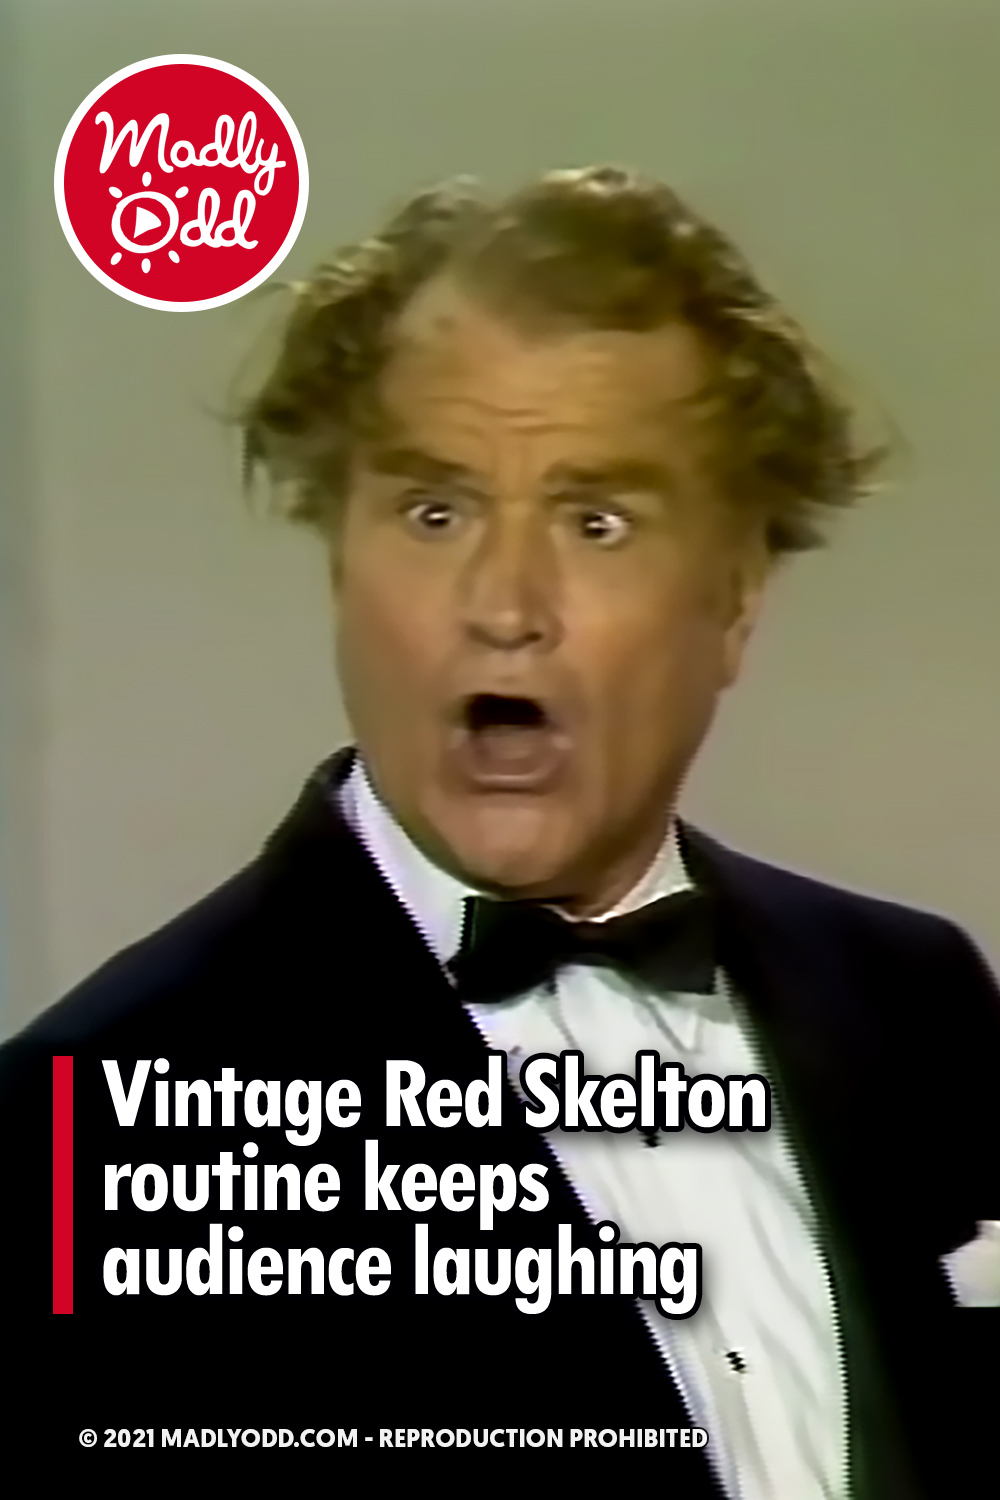 Vintage Red Skelton routine keeps audience laughing